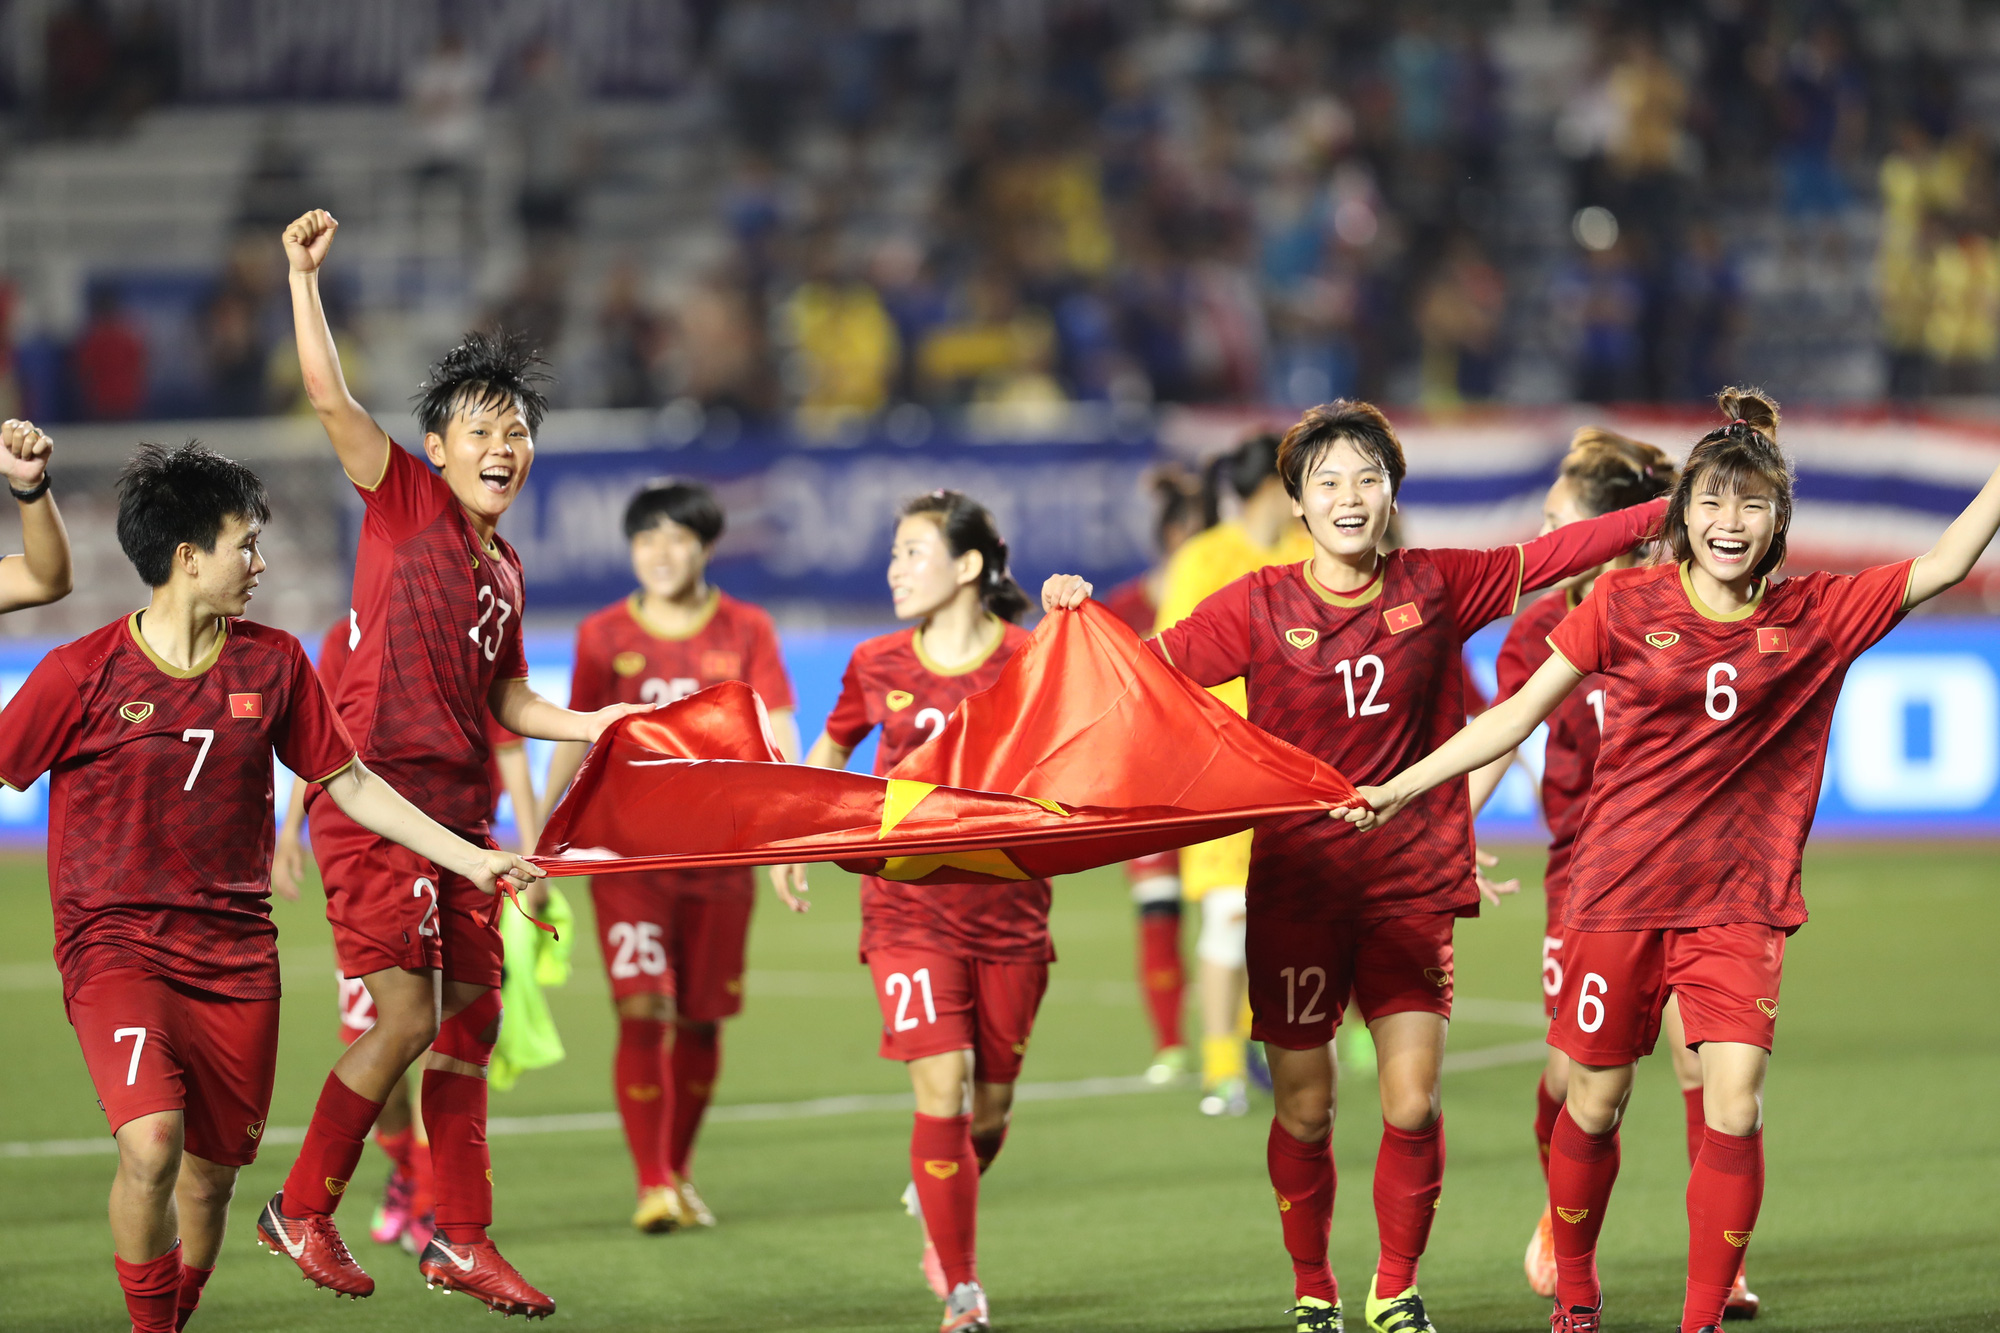 Việt Nam đã có lượt trận play-off thi đấu xuất sắc để giành vé tham dự chung kết